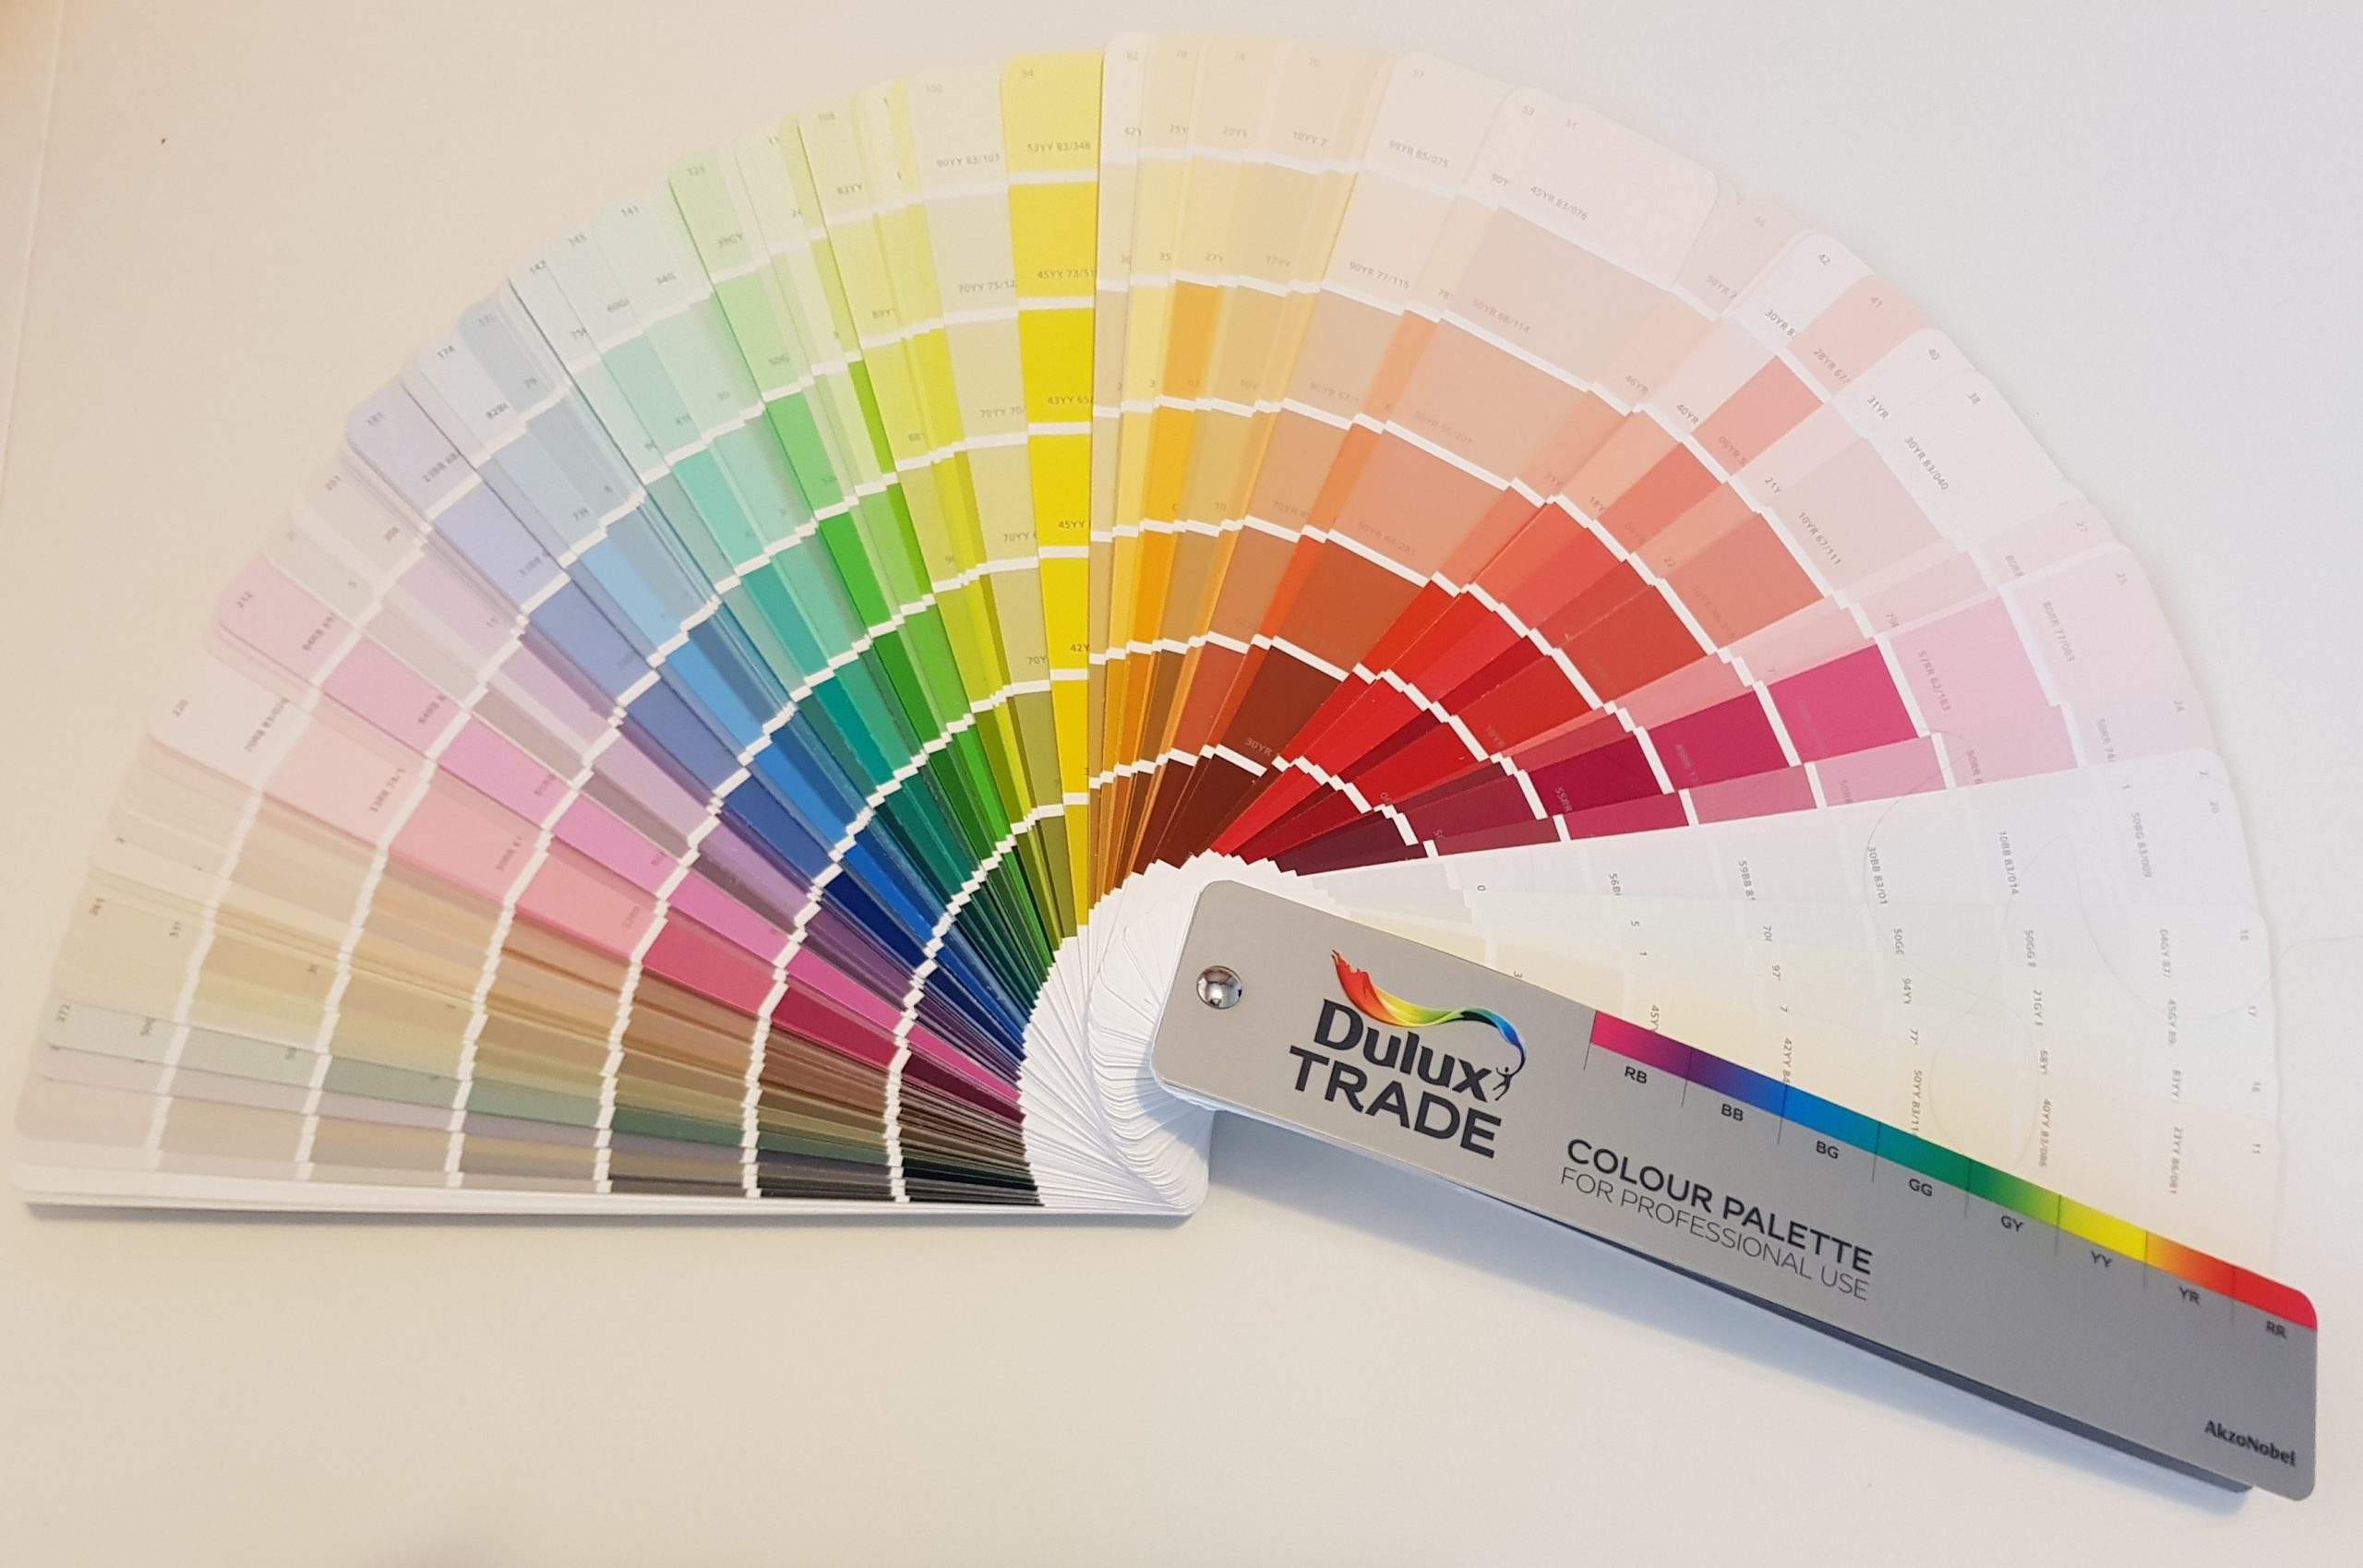 Dulux Trade - Colour fan deck